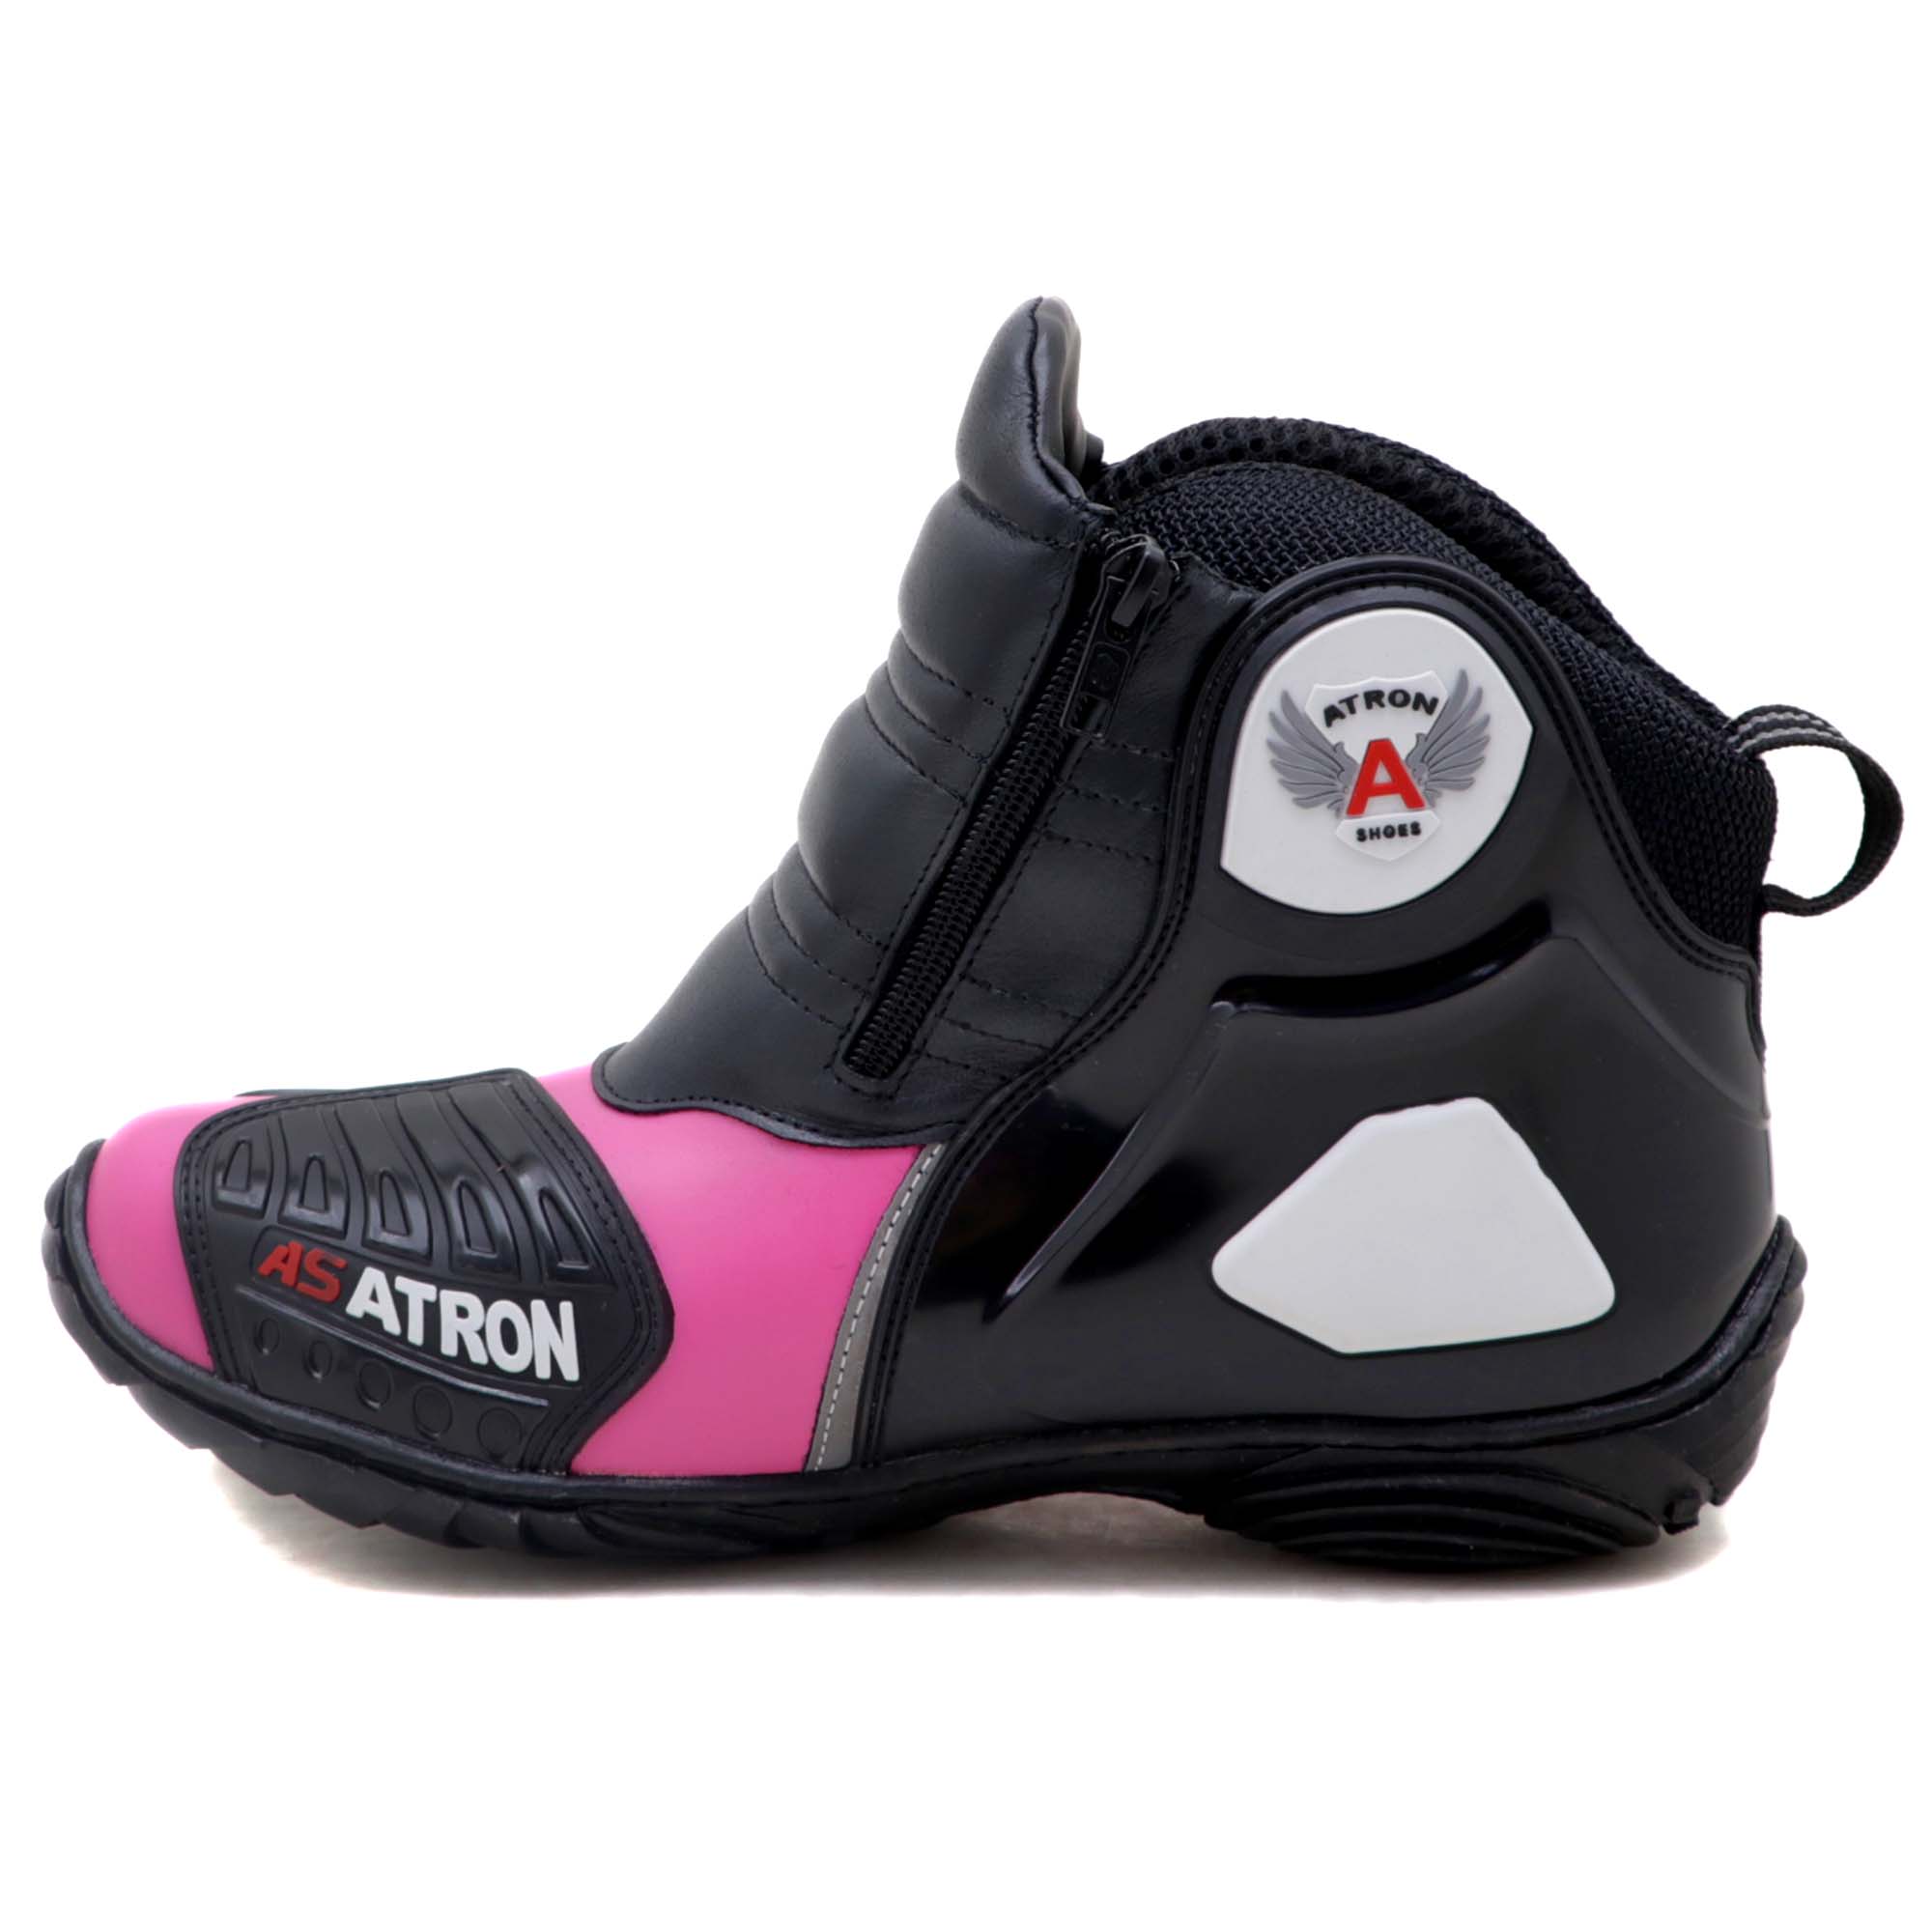 Bota motociclista Atron Shoes AS-HIGHWAY em couro legítimo semi-impermeável emborrachada na cor Pink 407